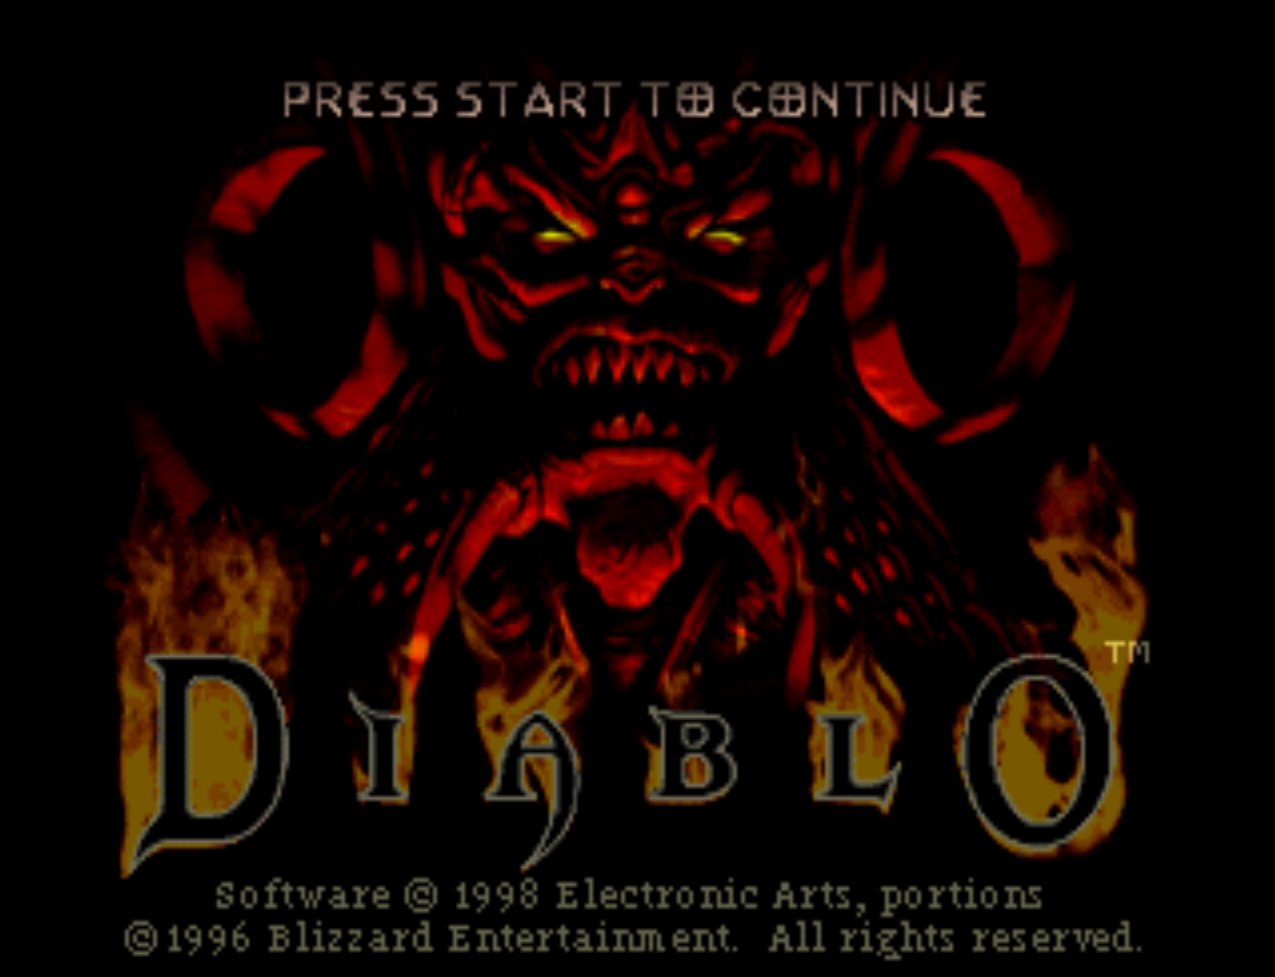 Diablo Title Screen